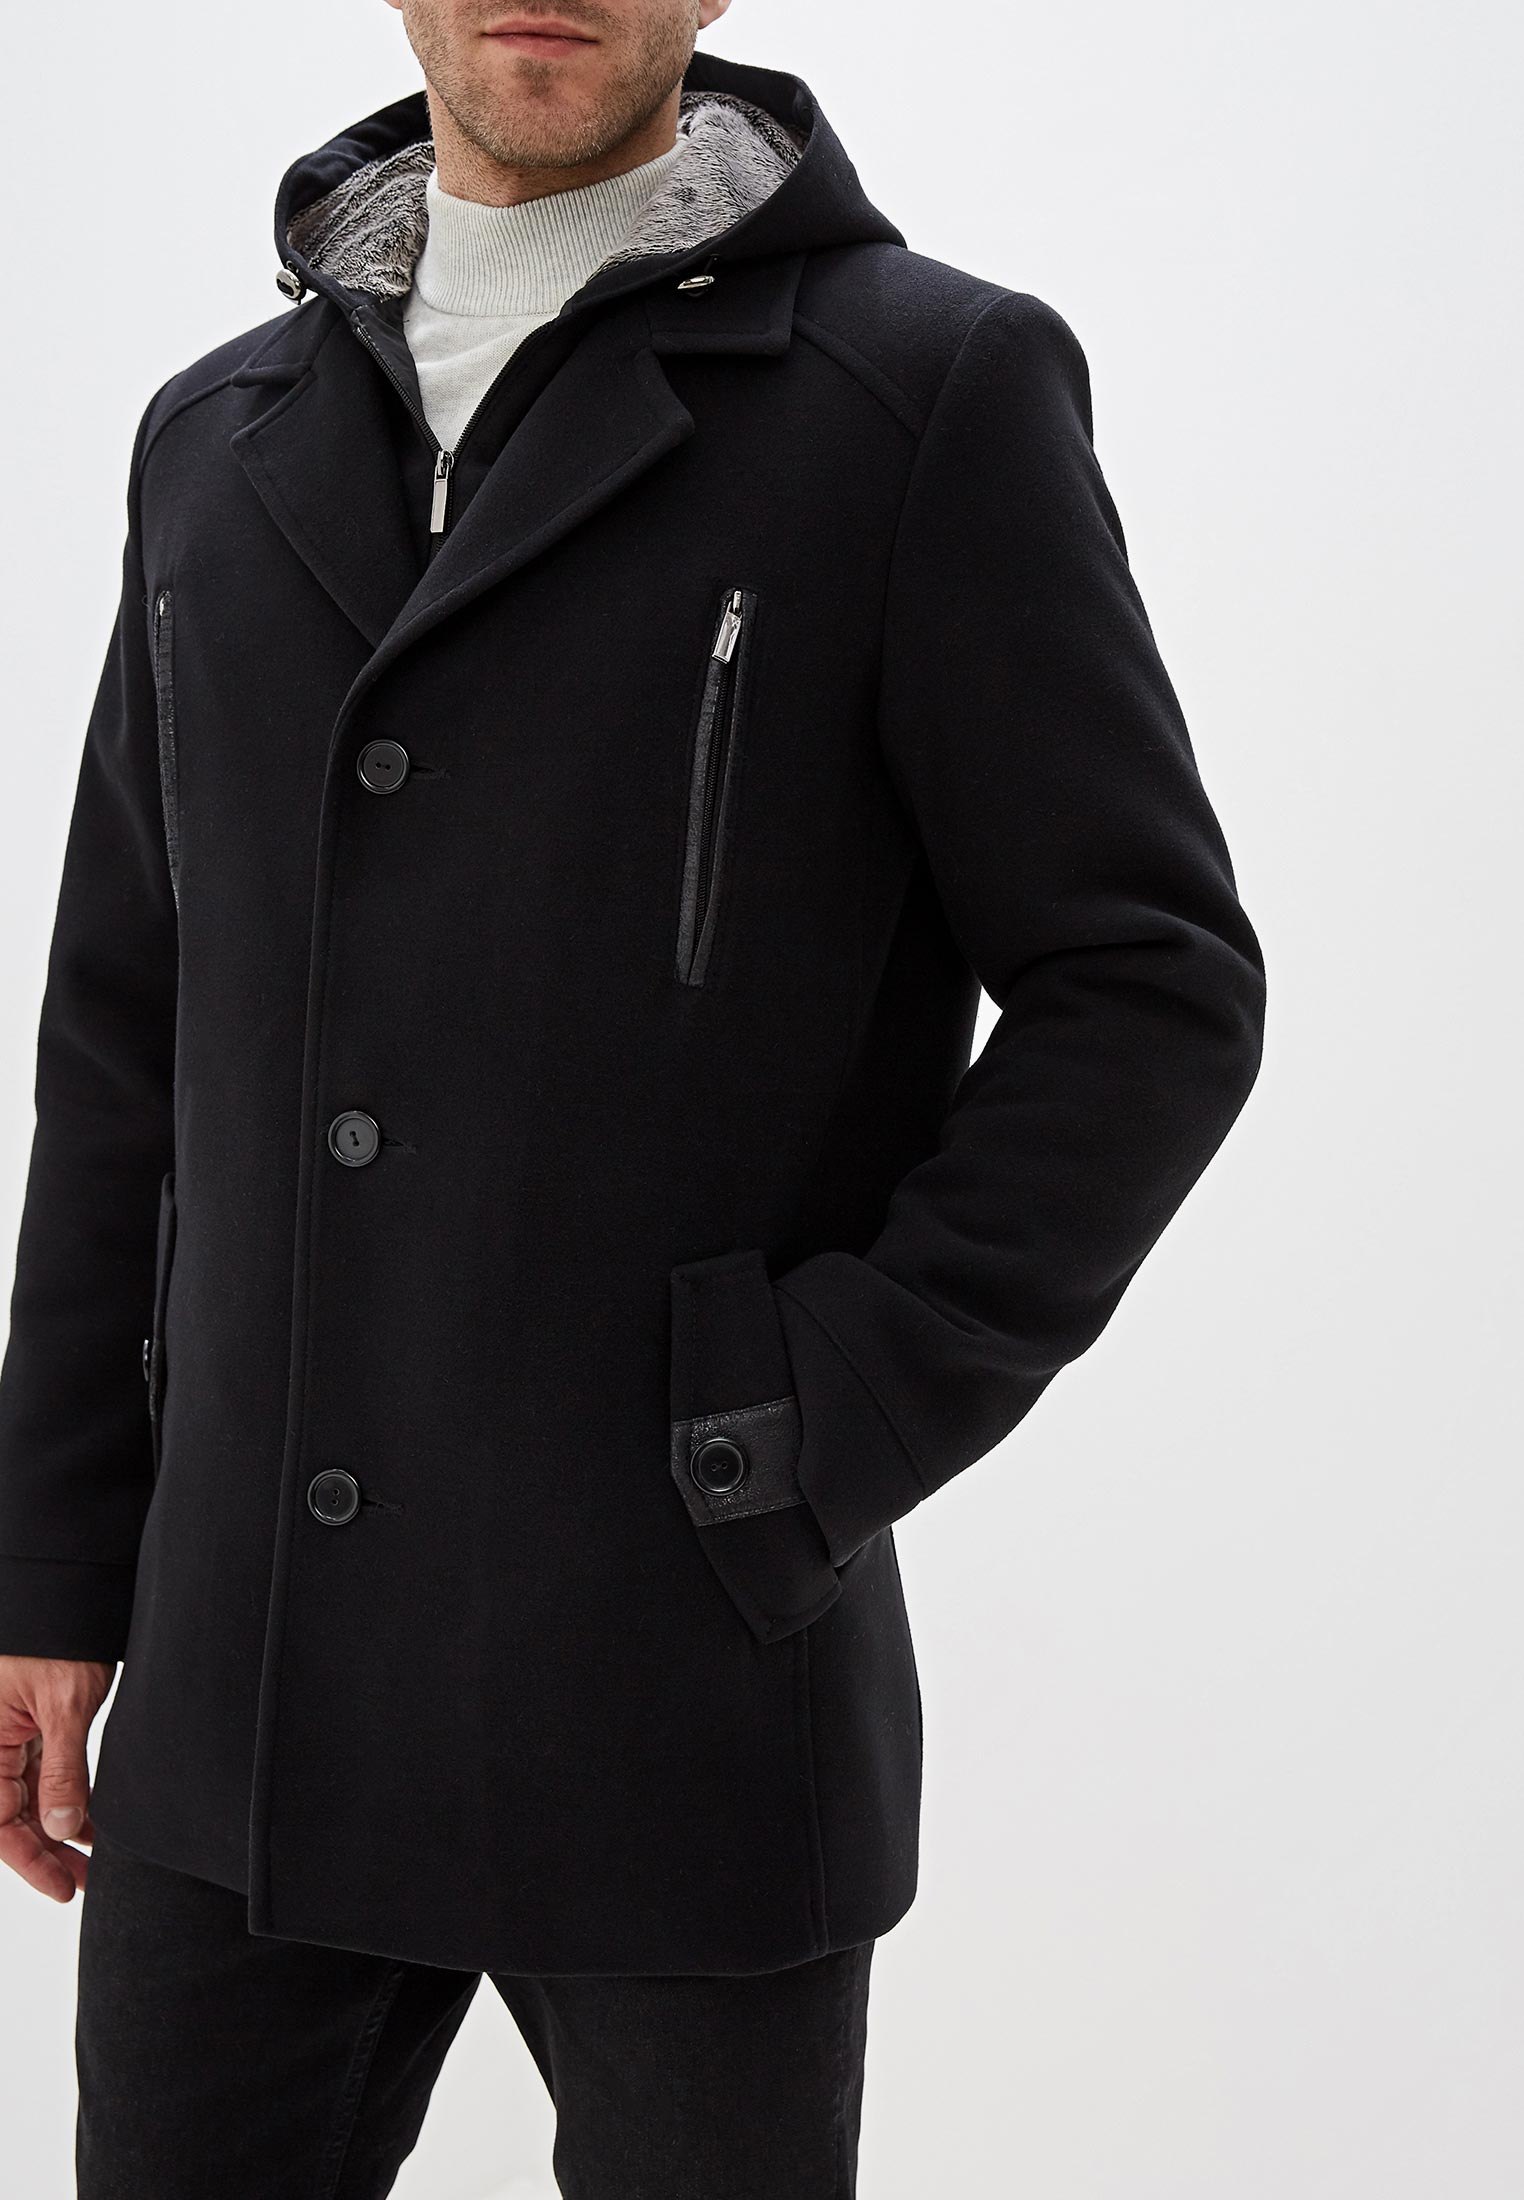 Мужские пальто купить недорого. Пальто мужское зимнее. Полупальто мужское. Зимнее пальто мужское черное. Полупальто мужское зимнее.